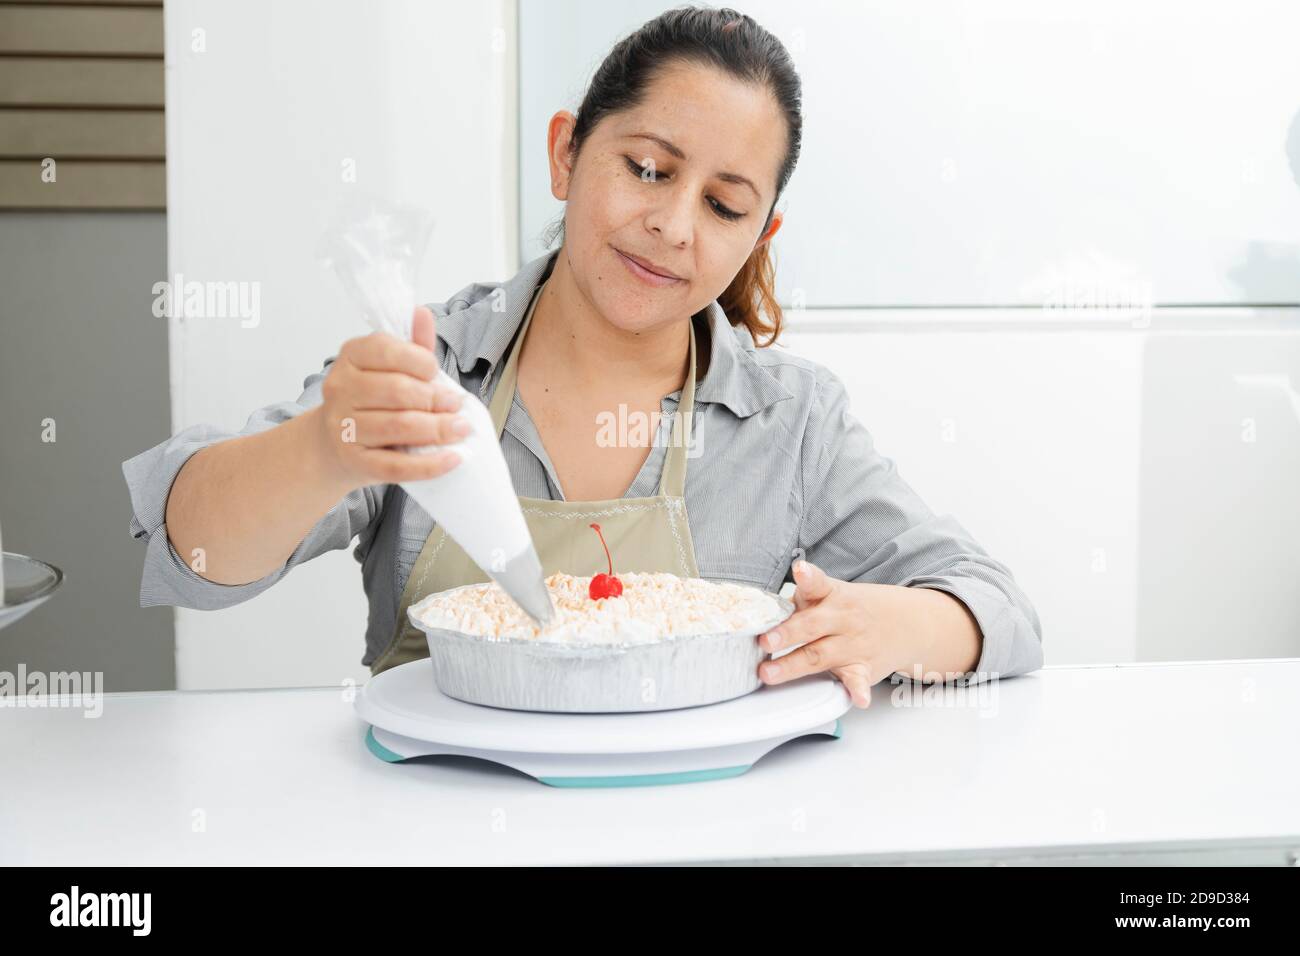 Hispanische Frau in ihrer Patisserie dekorieren einen Kuchen - Frau Putting Schlagsahne auf frisch gebackenen Kuchen - unternehmungslustige Frau Stockfoto